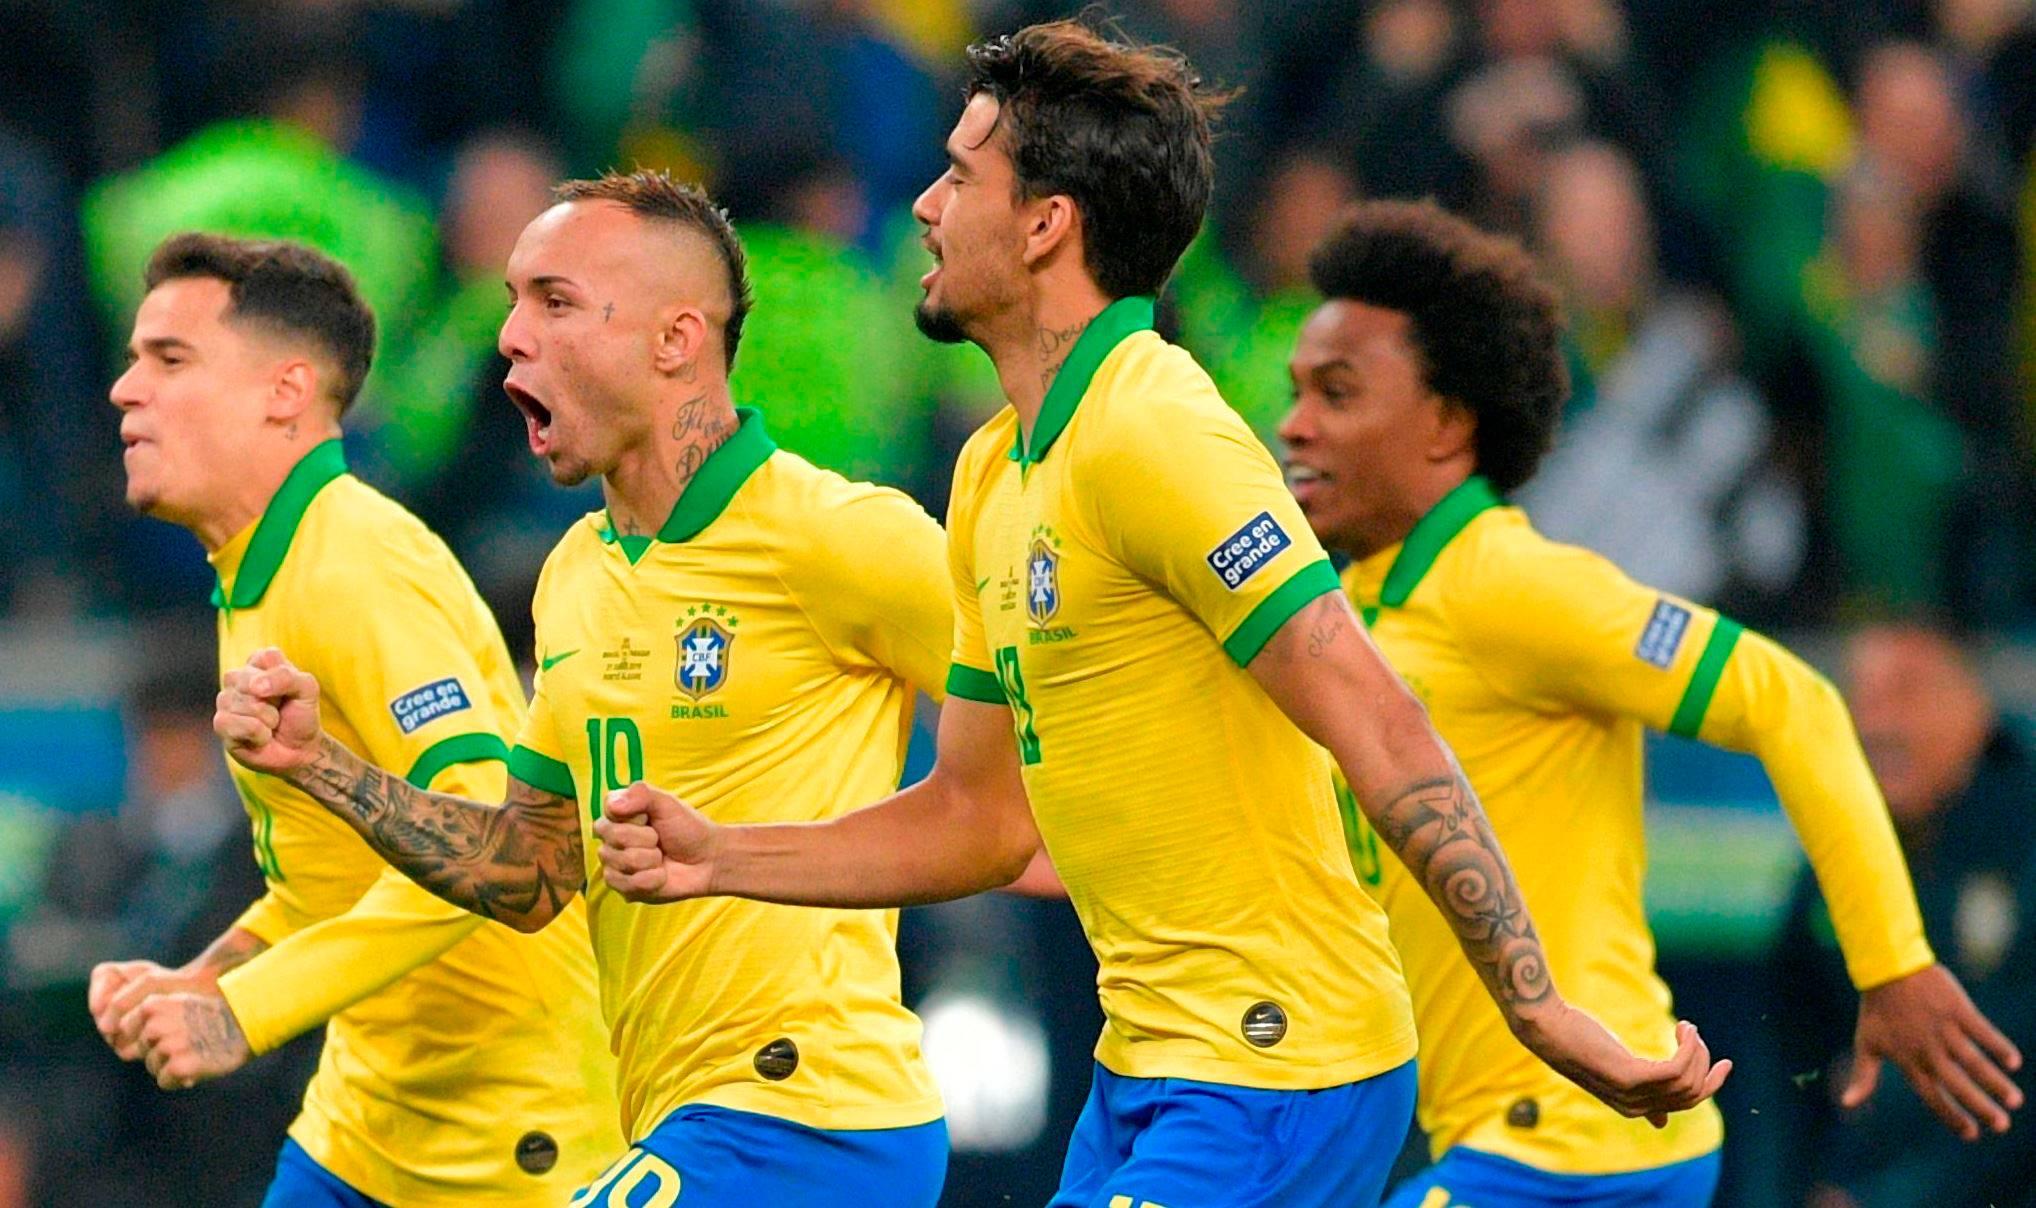 Seleção brasileira procura sua identidade. Não dispomos mais de superjogadores